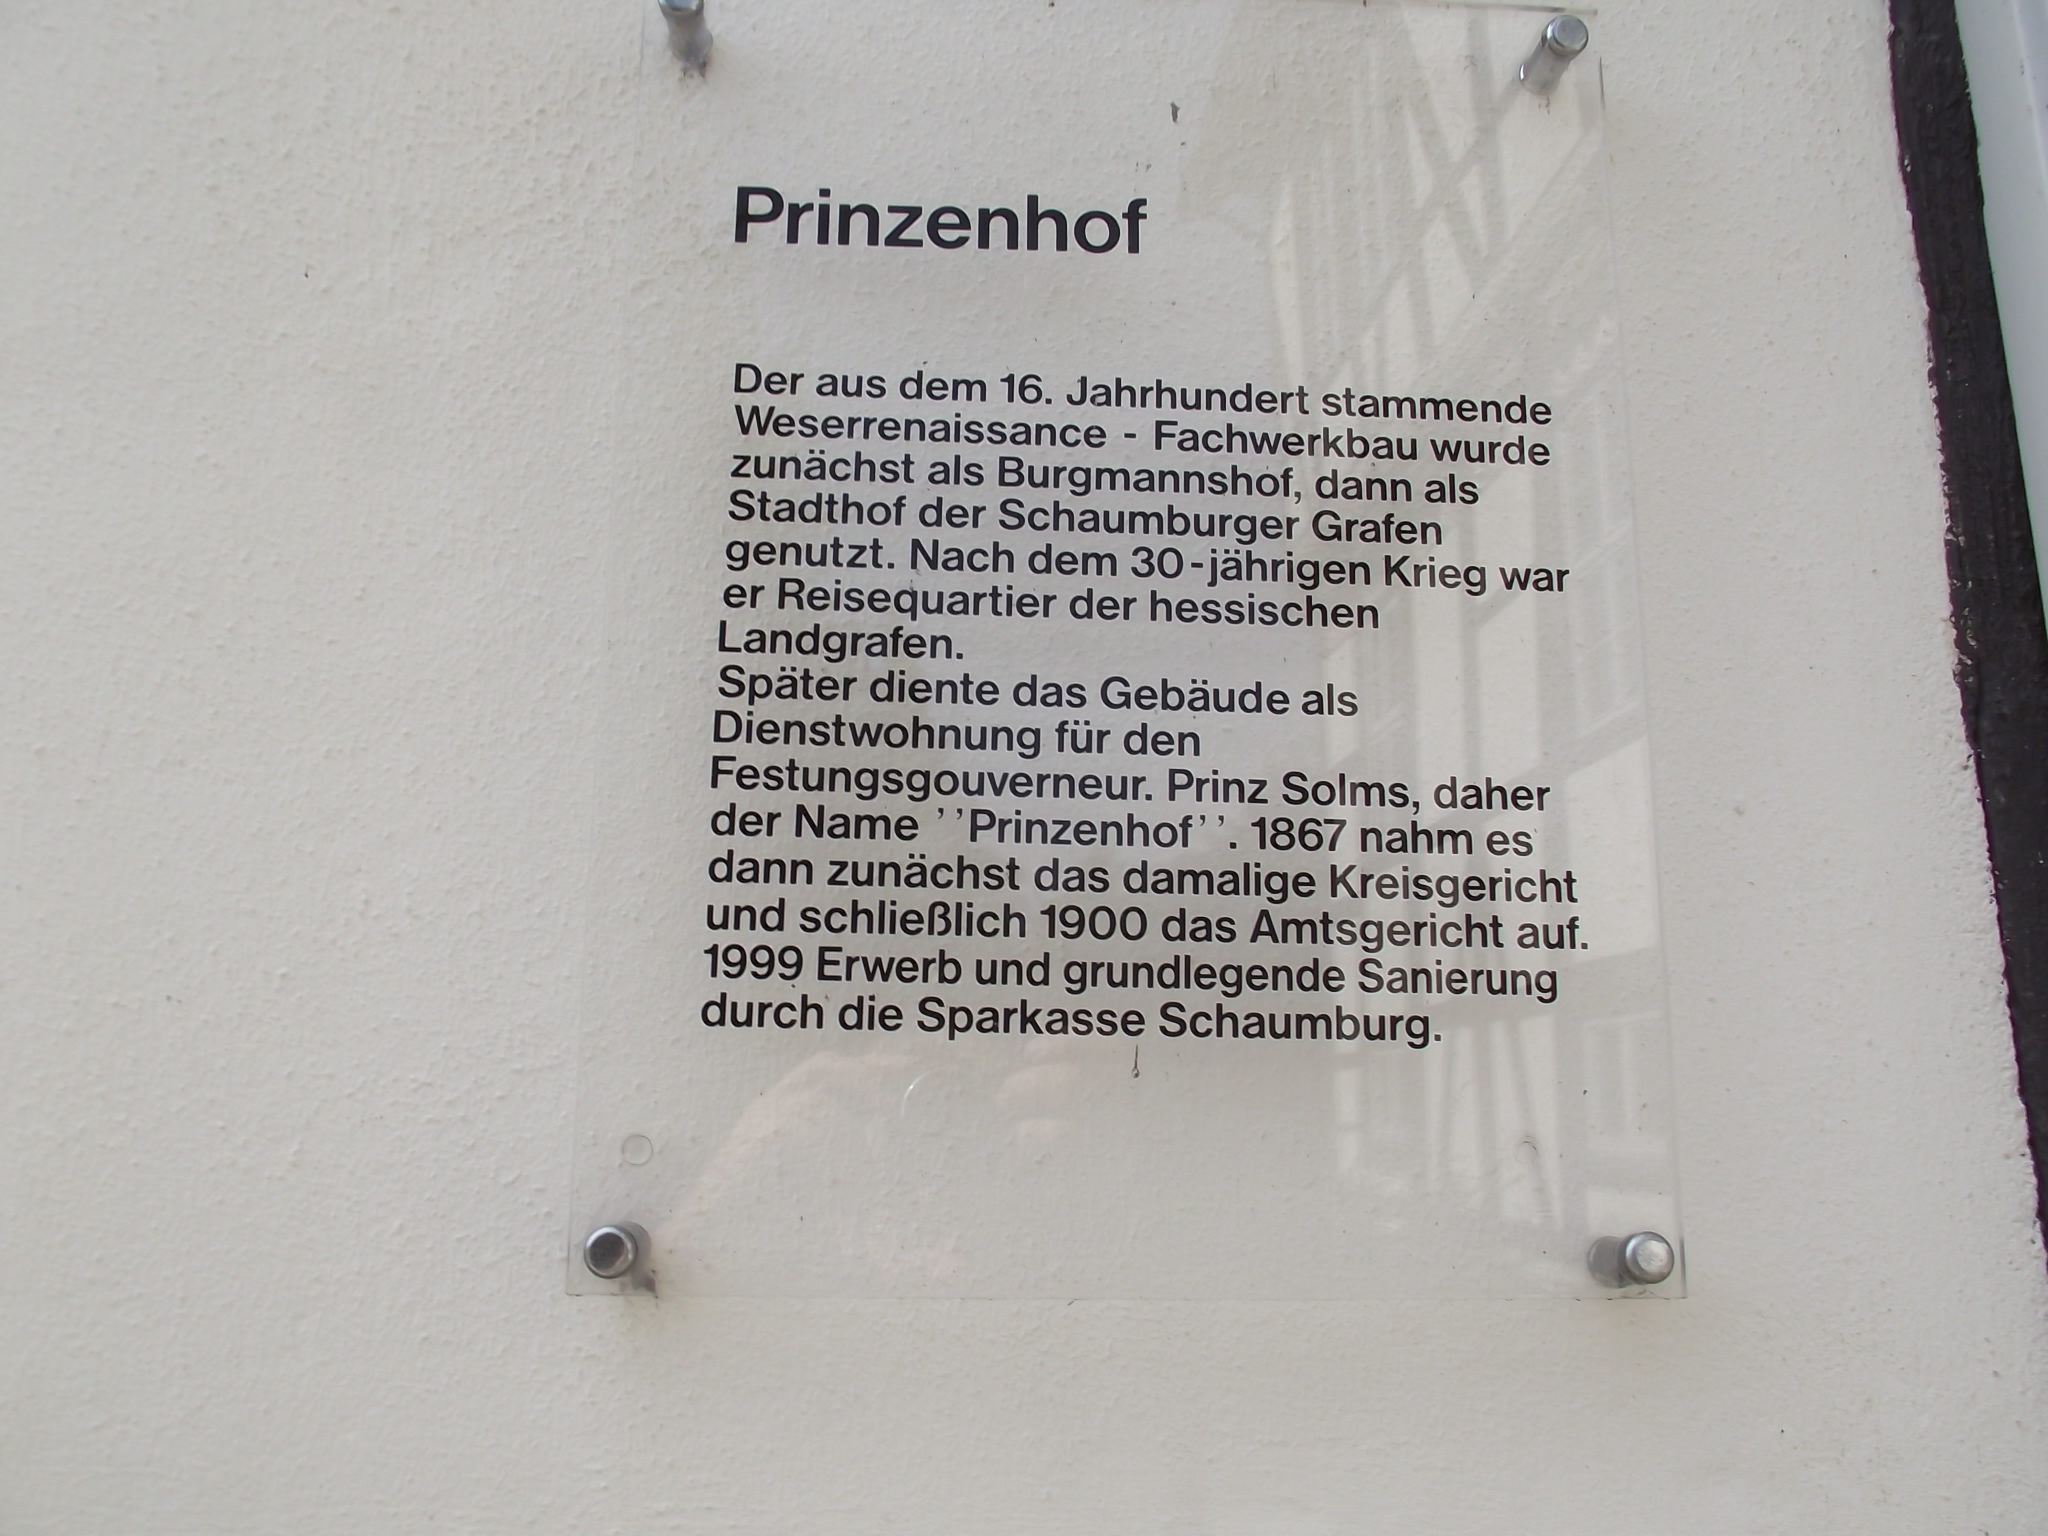 Sparkasse Schaumburg in Rinteln - Prinzenhof